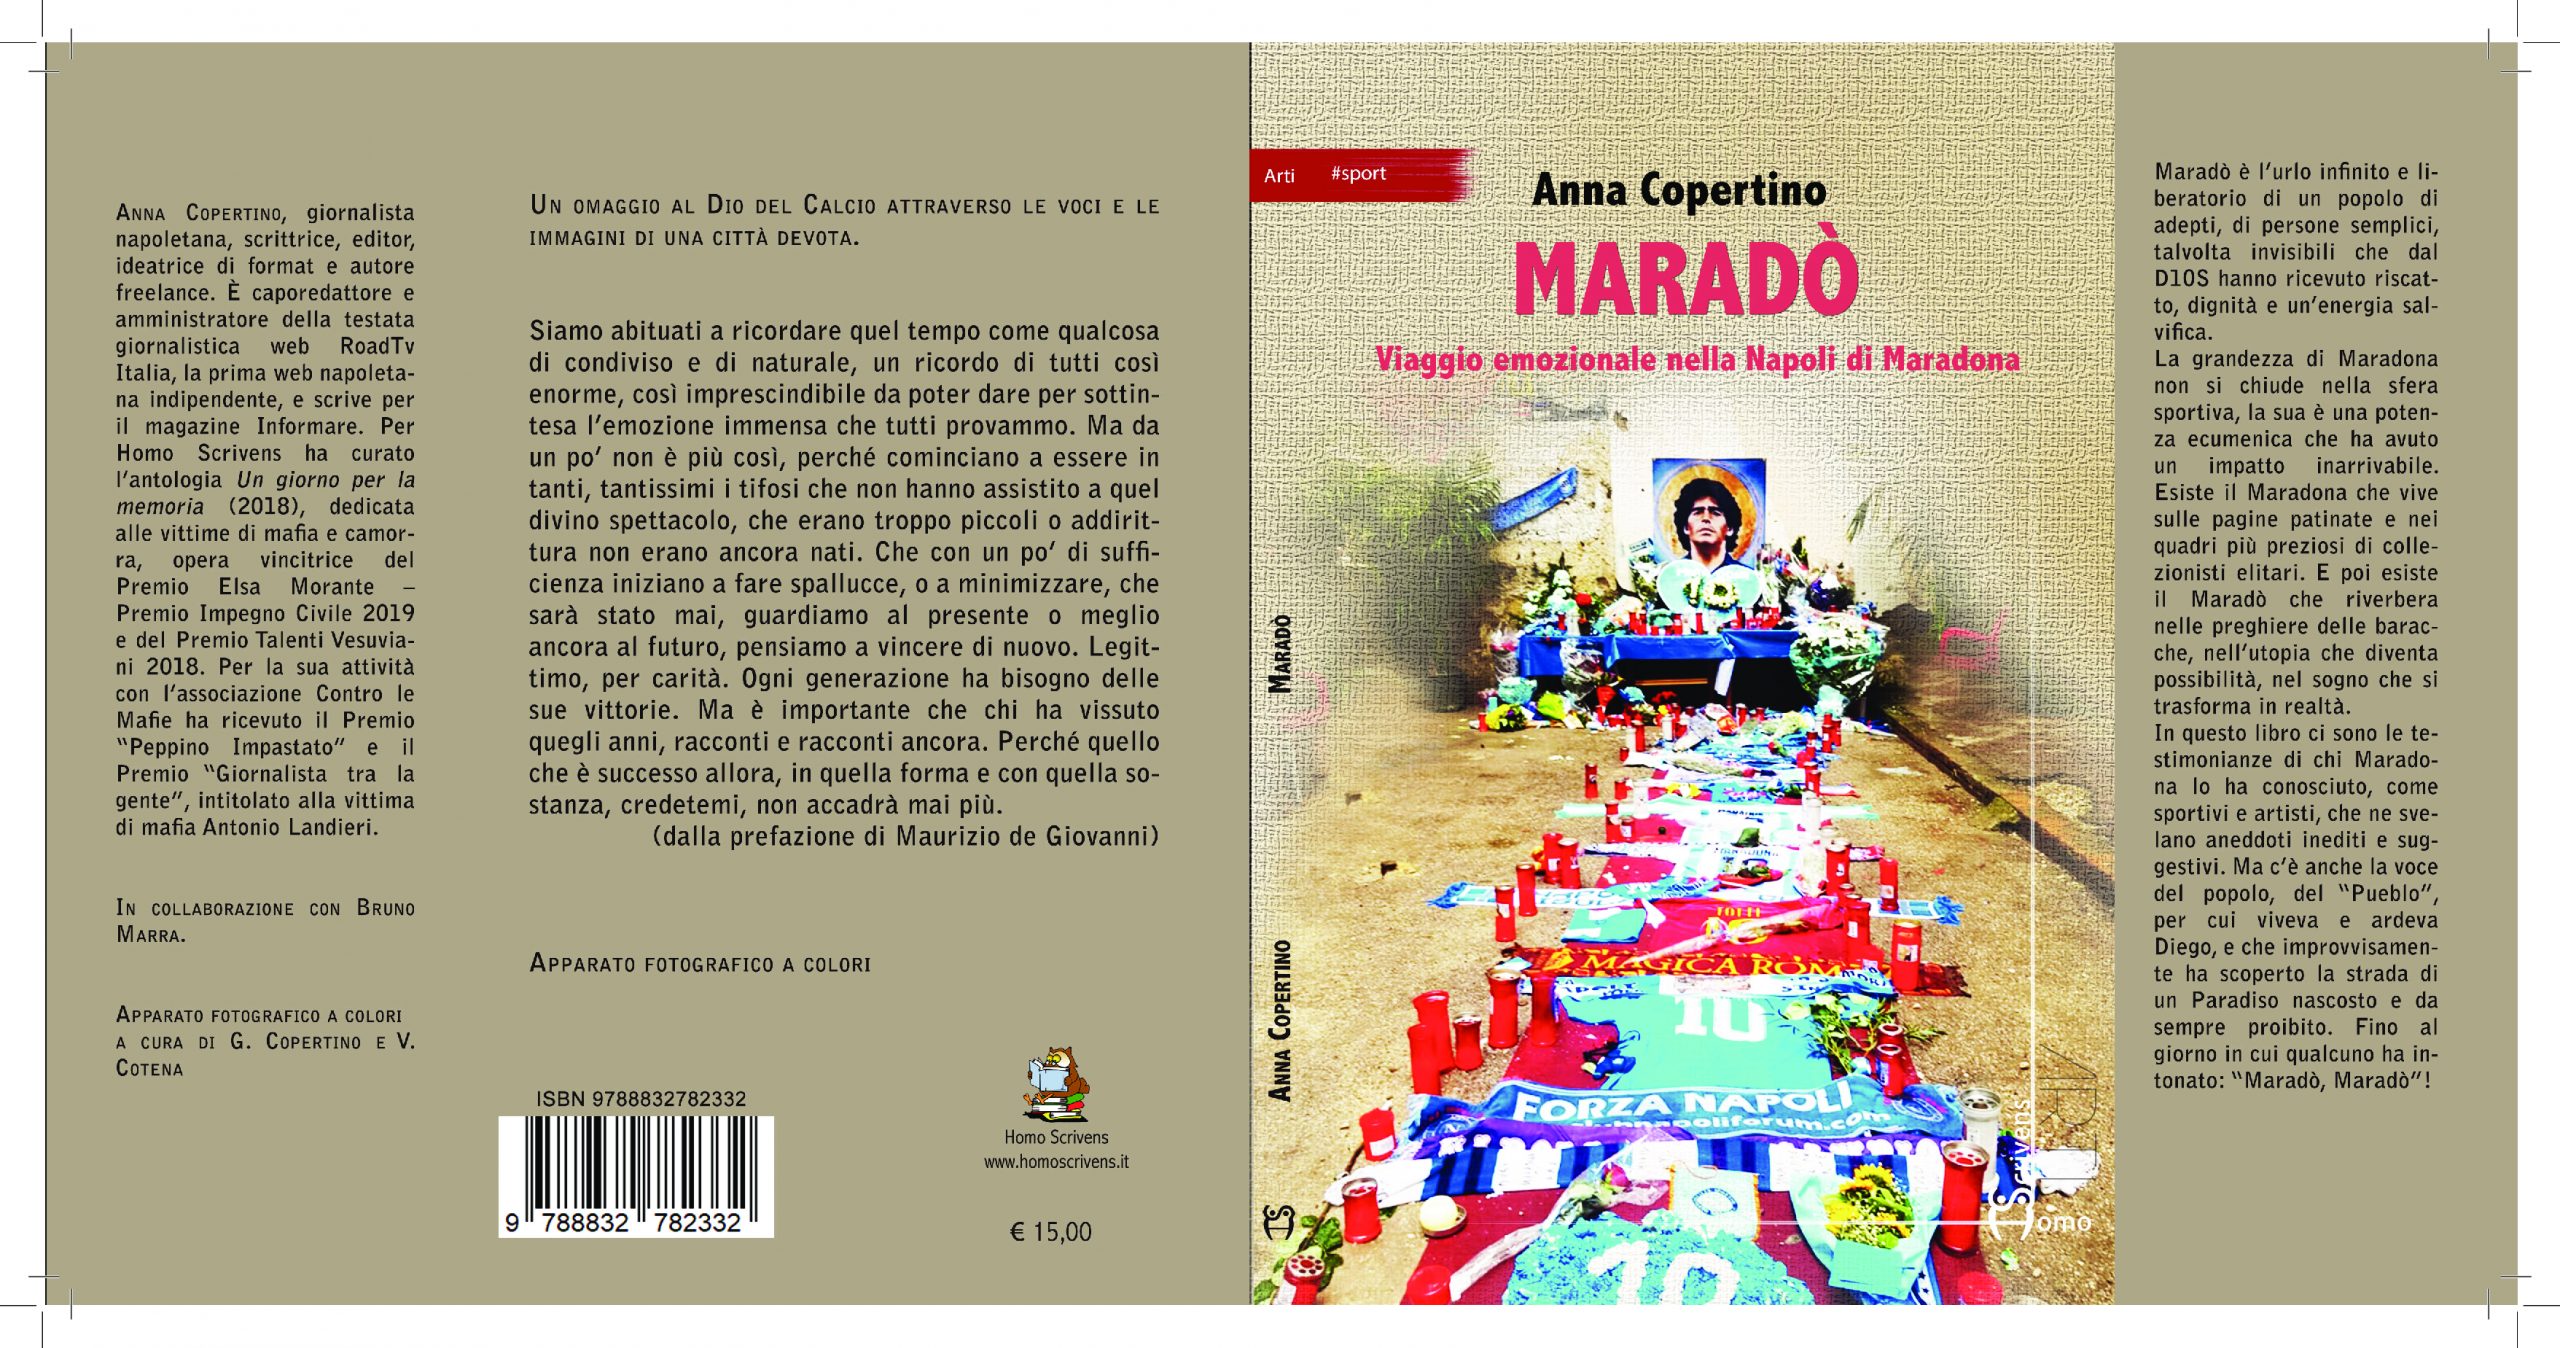 "Maradò", viaggio emozionale nella Napoli di Maradona con il libro di Anna Copertino